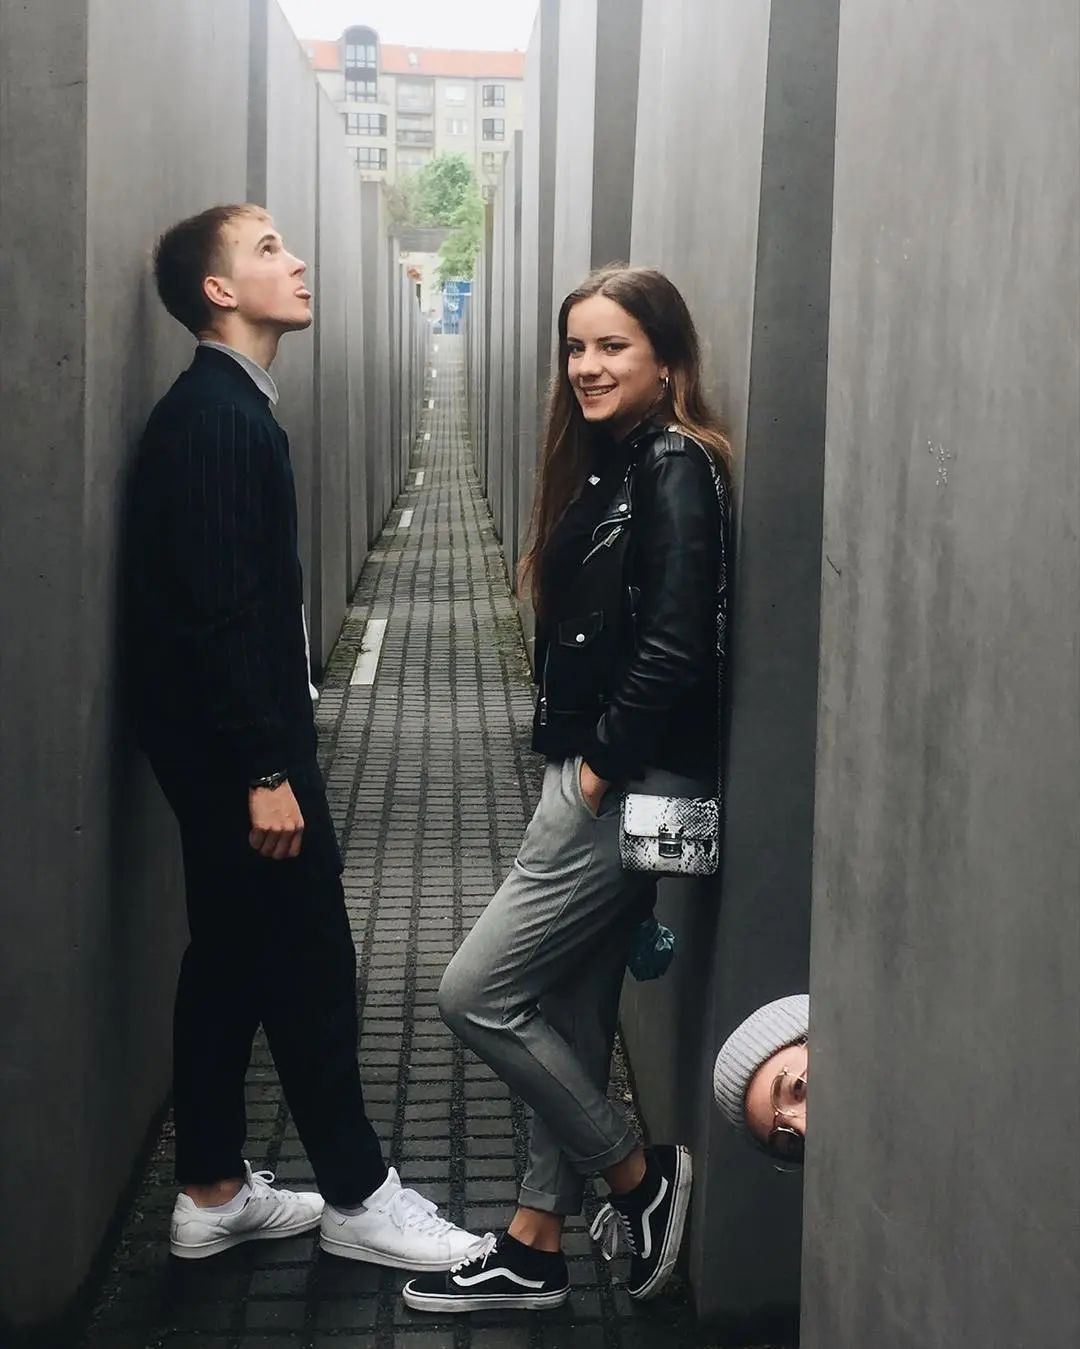 Holocaust memorial, Berlin, Jerman. (Sumber Foto: chiara.nou/Instagram)